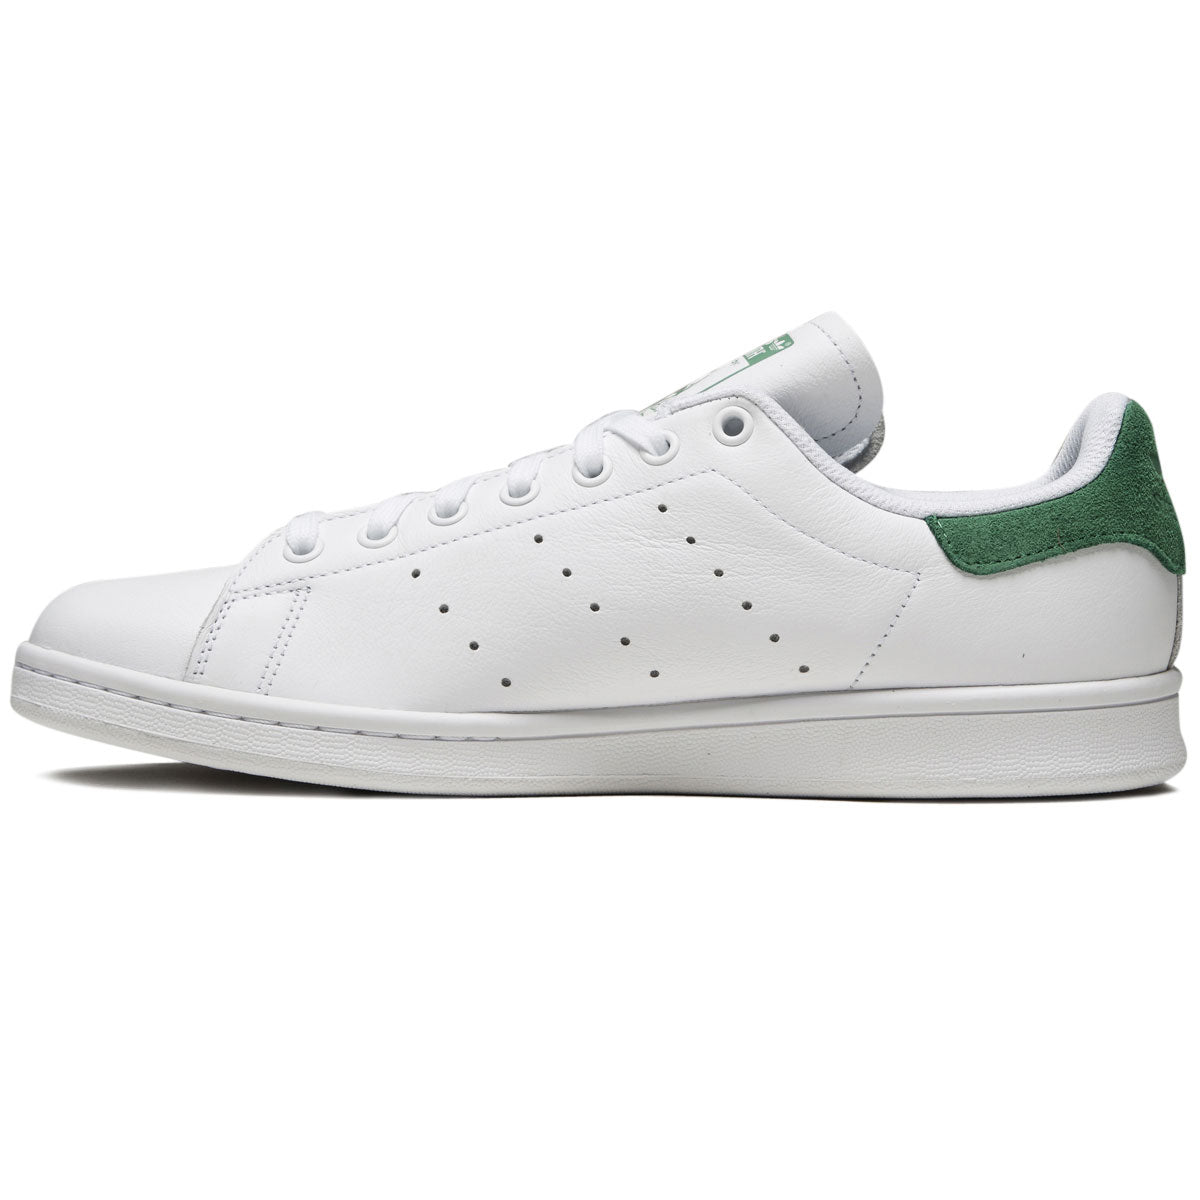 Adidas Stan Smith Adv Shoes - White/White/Green CCS